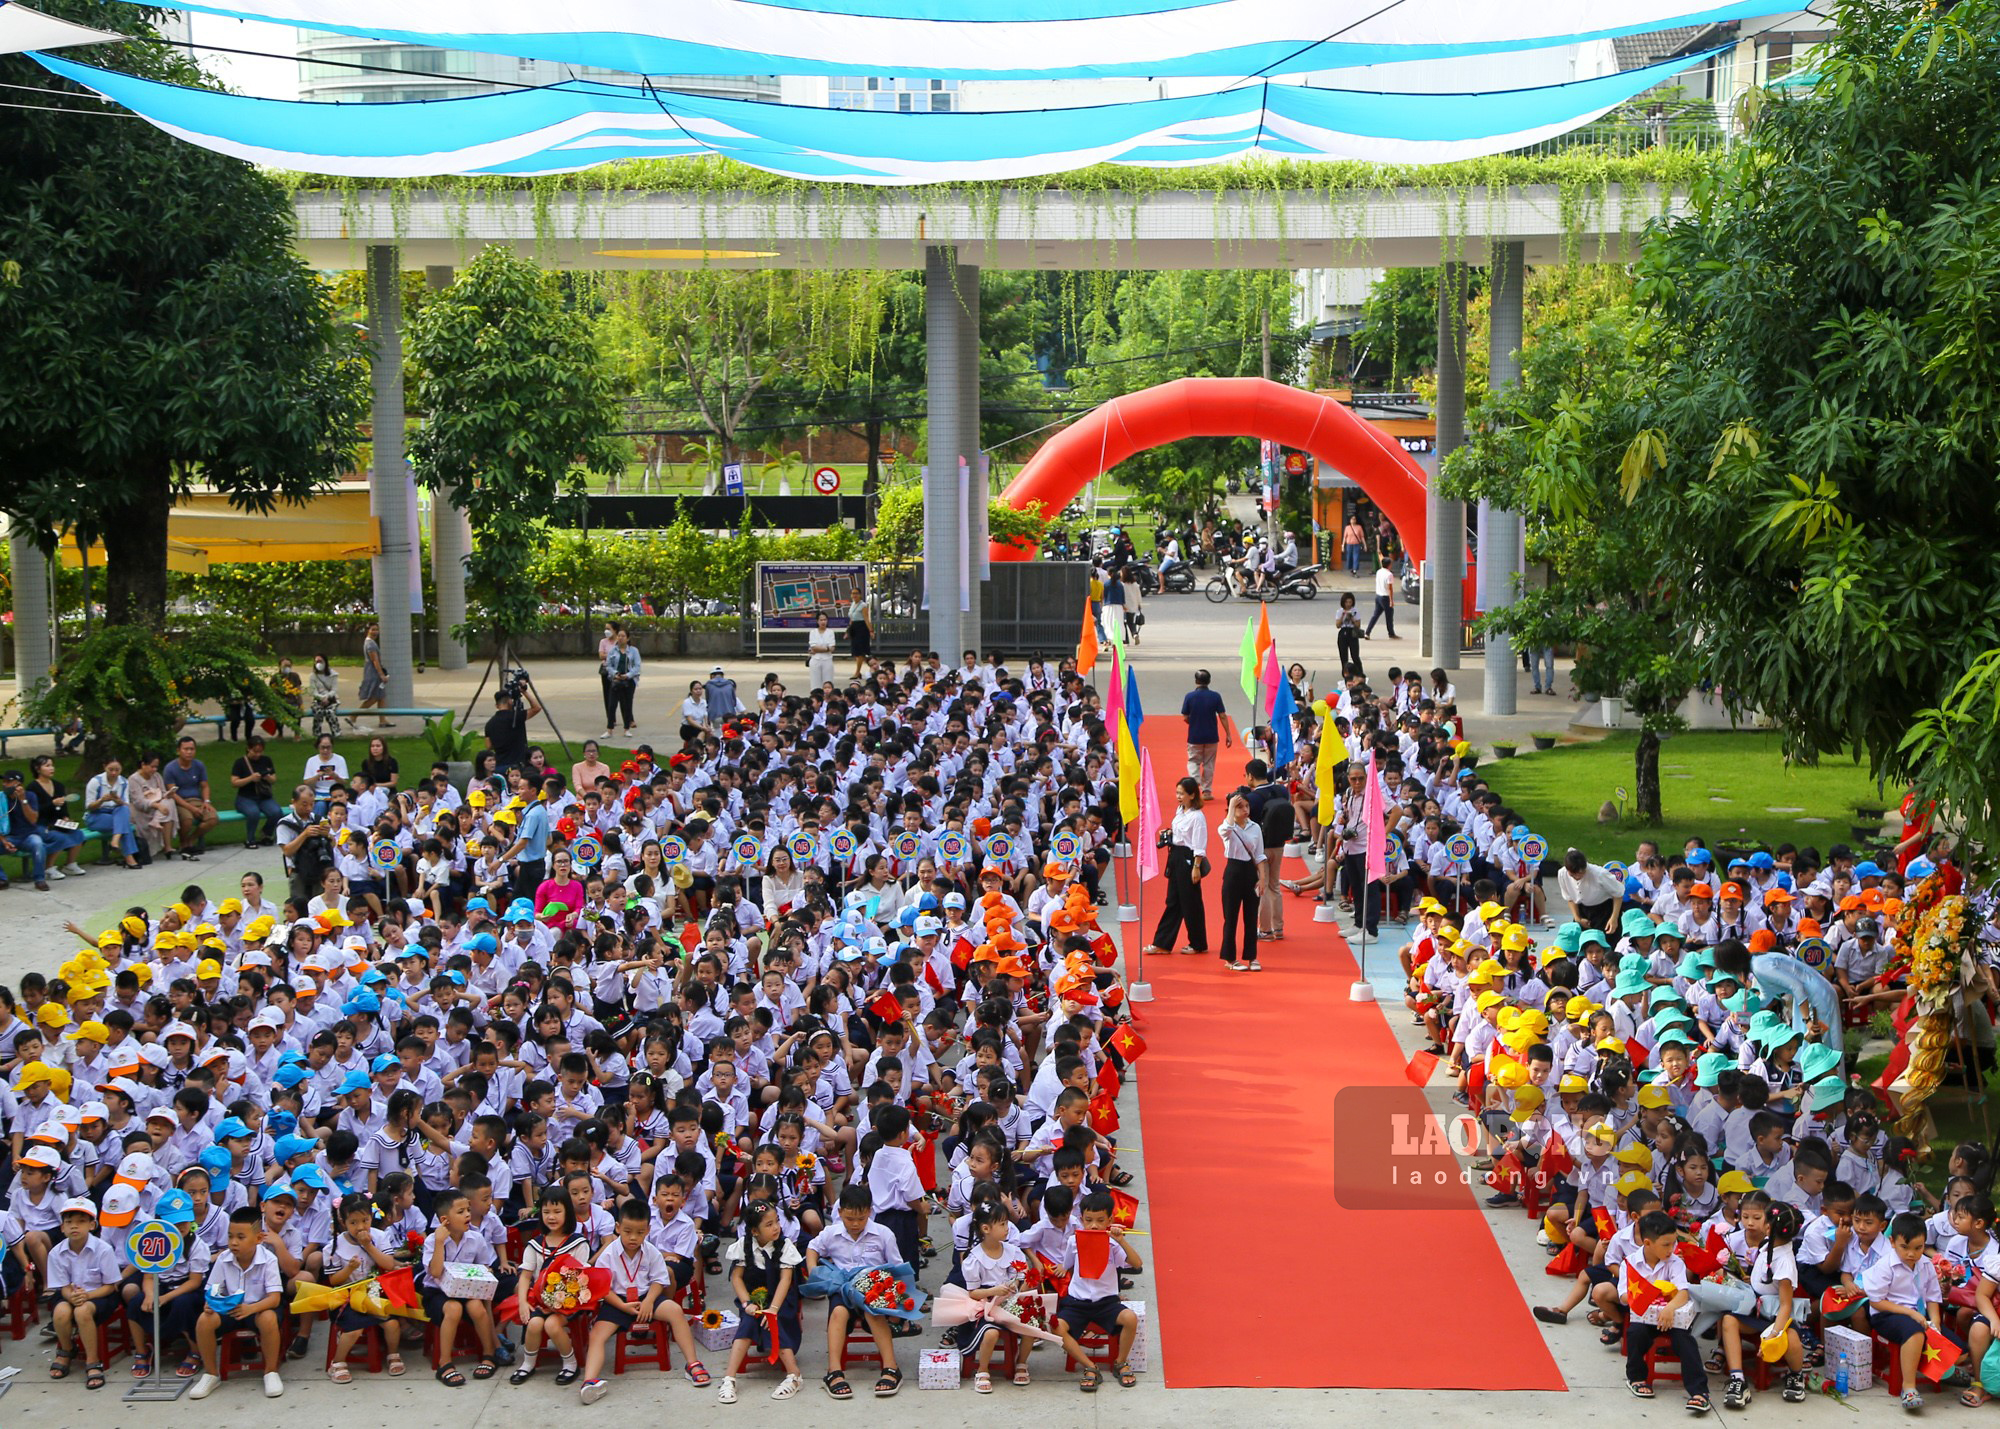 Năm nay, Đà Nẵng có 290.000 học sinh đến trường tham dự lễ khai giảng được tổ chức với tinh thần ngắn gọn, không phát biểu các cấp lãnh đạo, không thả bóng bay.